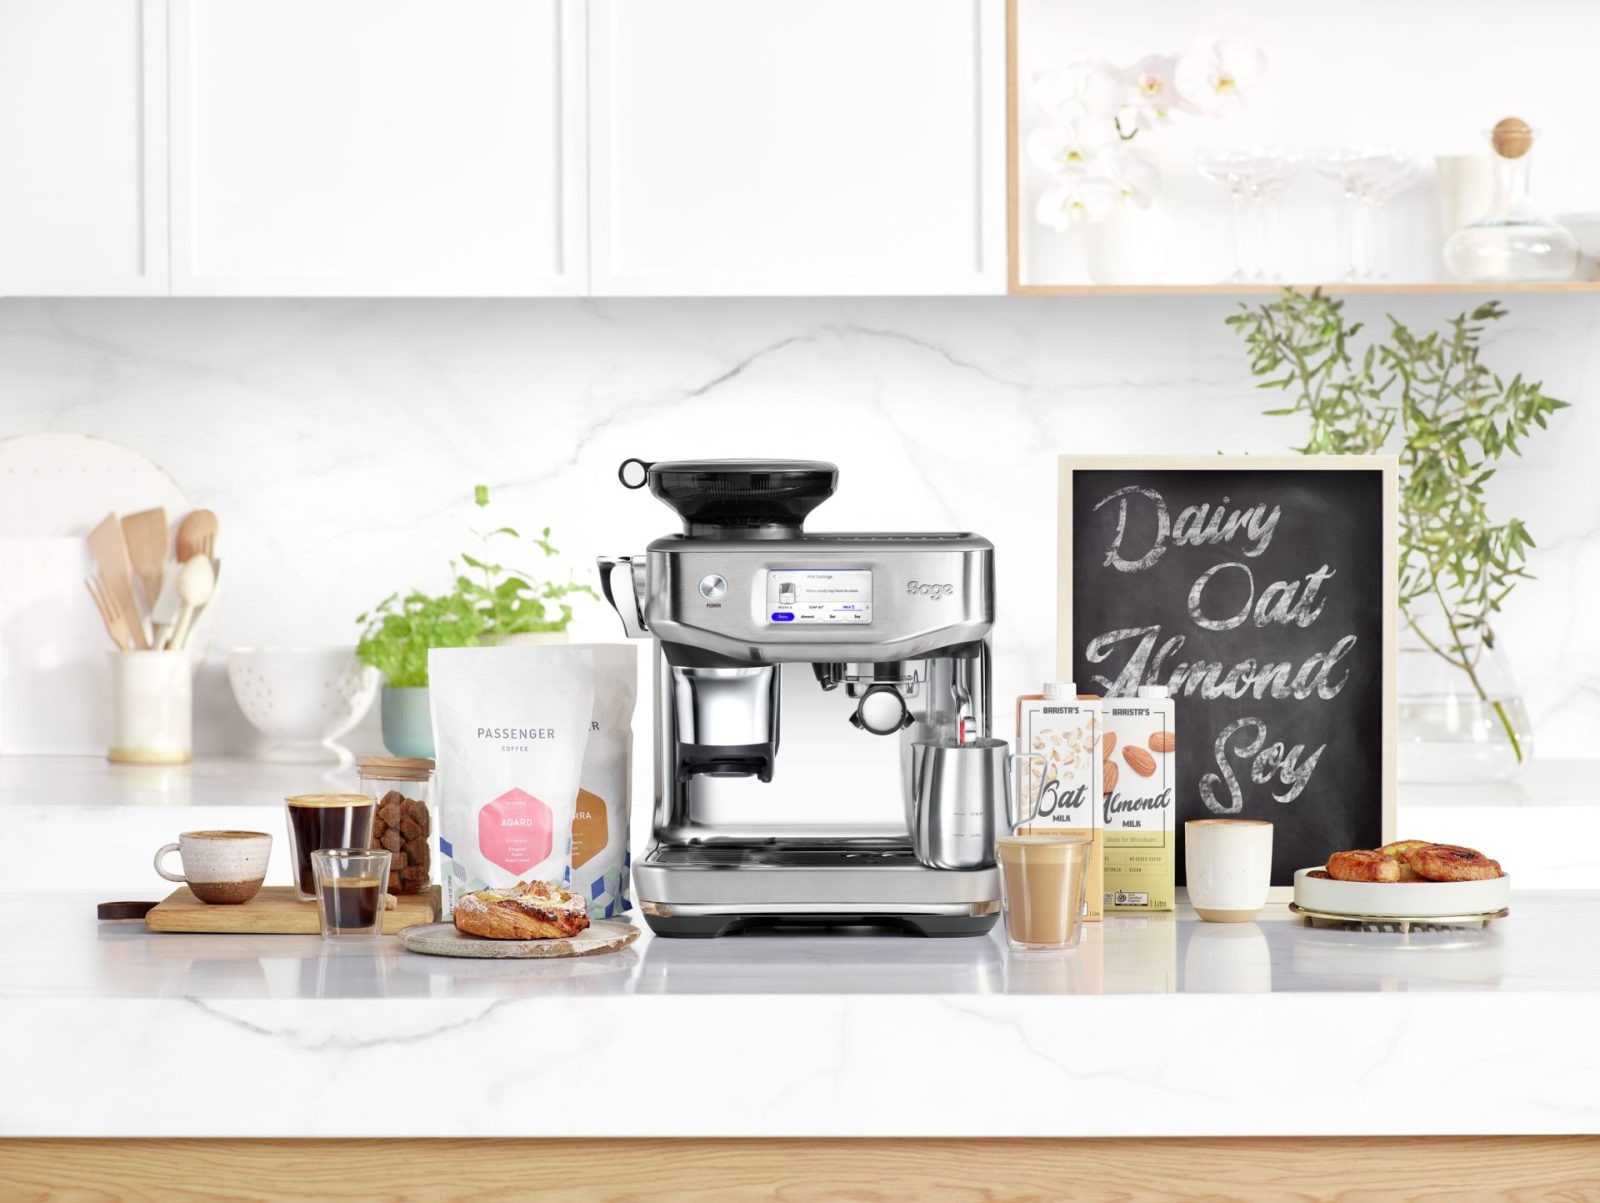 The Barista Touch Impress – Sage Appliances przedstawia pierwszy ekspres do kawy spieniający mleko roślinne